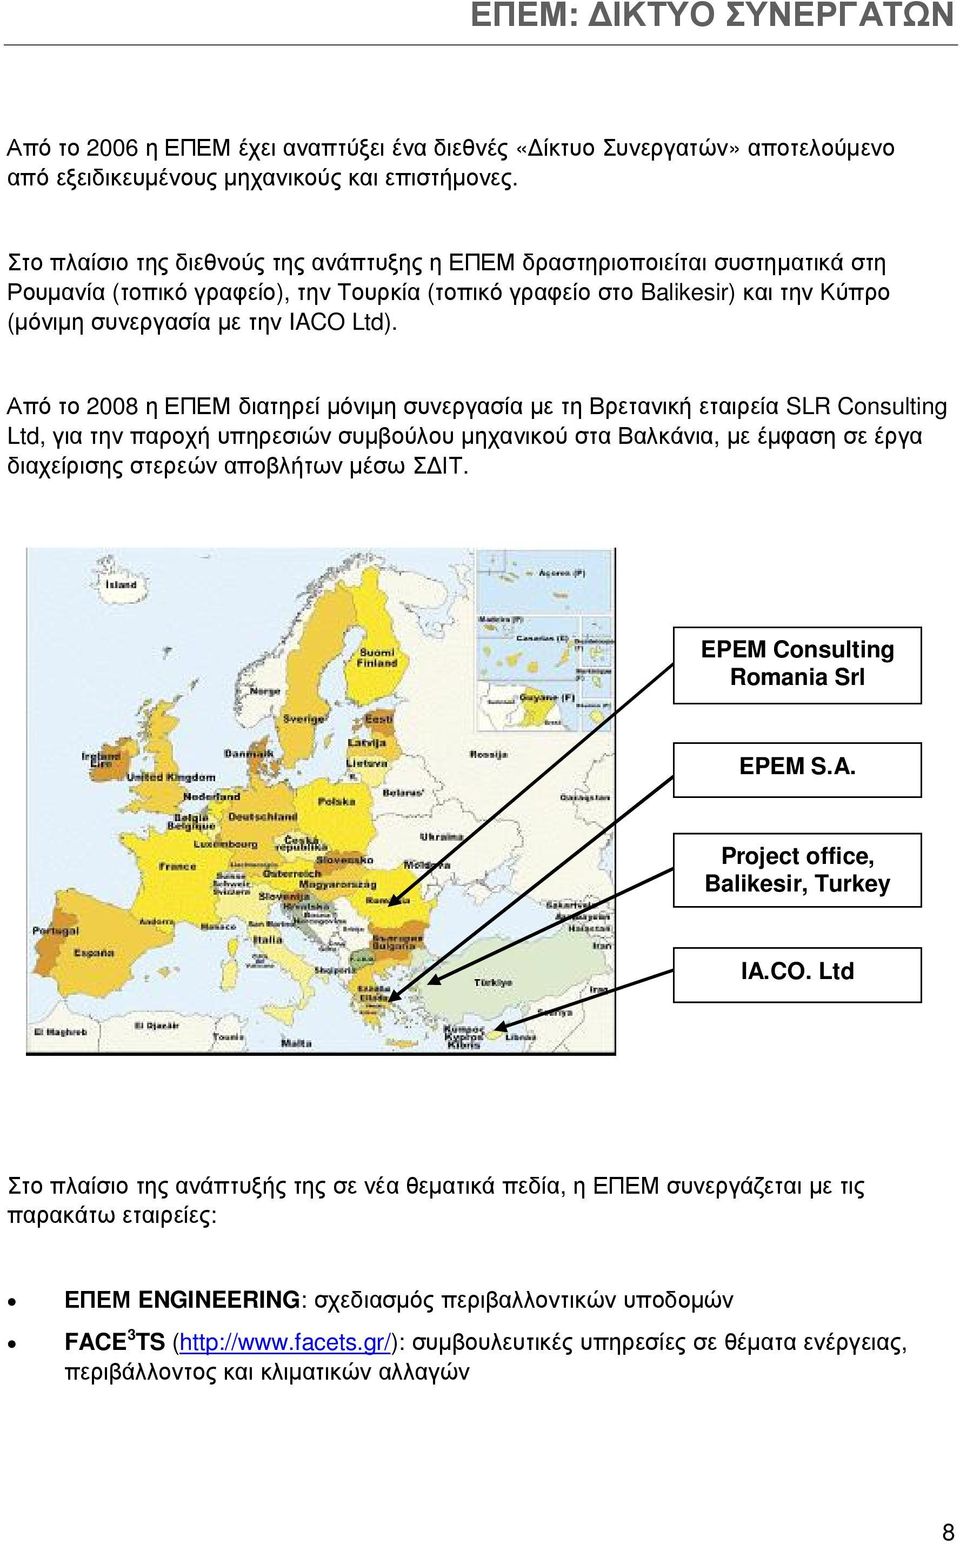 Από το 2008 η ΕΠΕΜ διατηρεί µόνιµη συνεργασία µε τη Βρετανική εταιρεία SLR Consulting Ltd, για την παροχή υπηρεσιών συµβούλου µηχανικού στα Βαλκάνια, µε έµφαση σε έργα διαχείρισης στερεών αποβλήτων